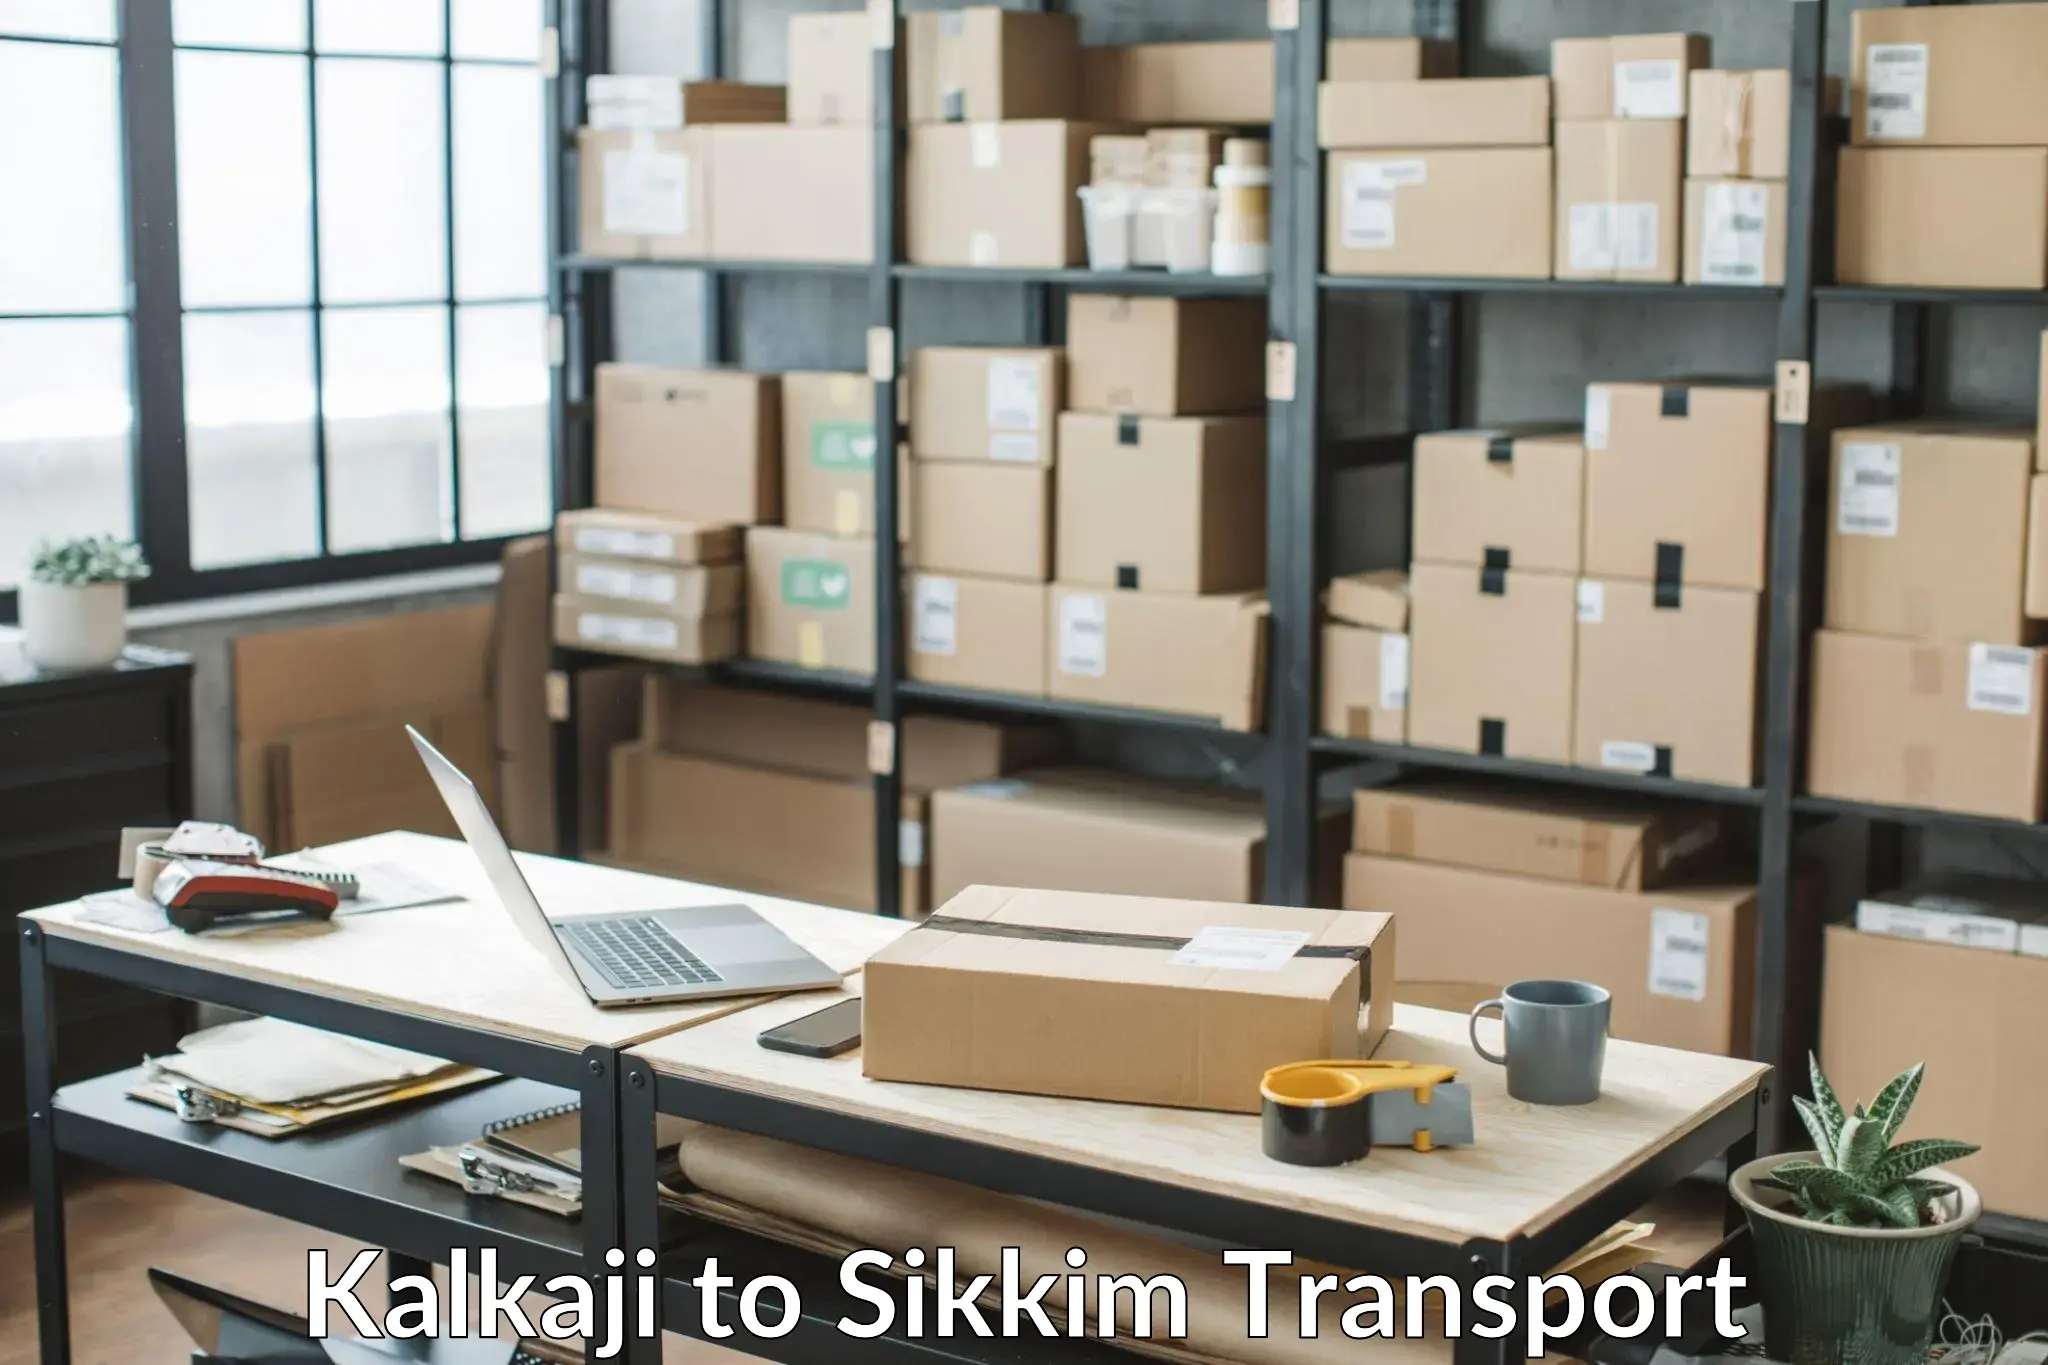 Goods delivery service Kalkaji to Pelling